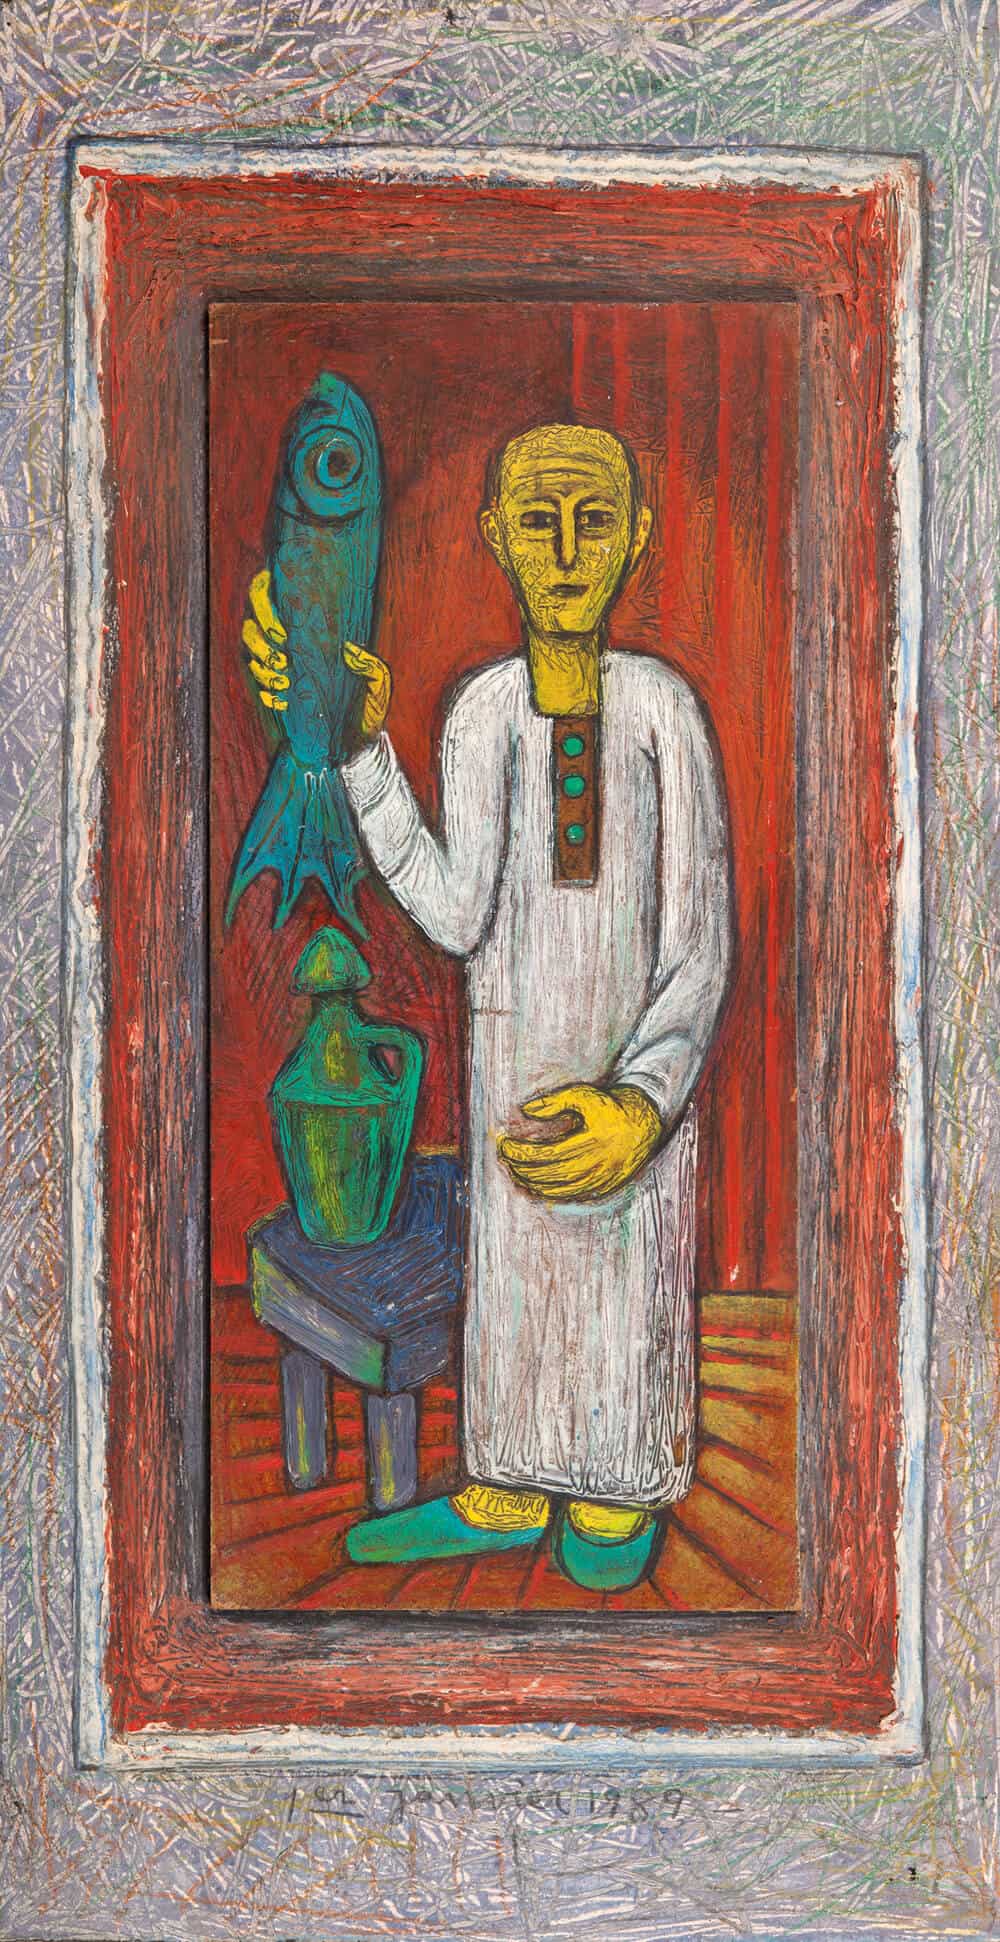 Samir Rafi, Untitled, 1989. Oil on Board. Courtesy of UBUNTU Art Gallery.